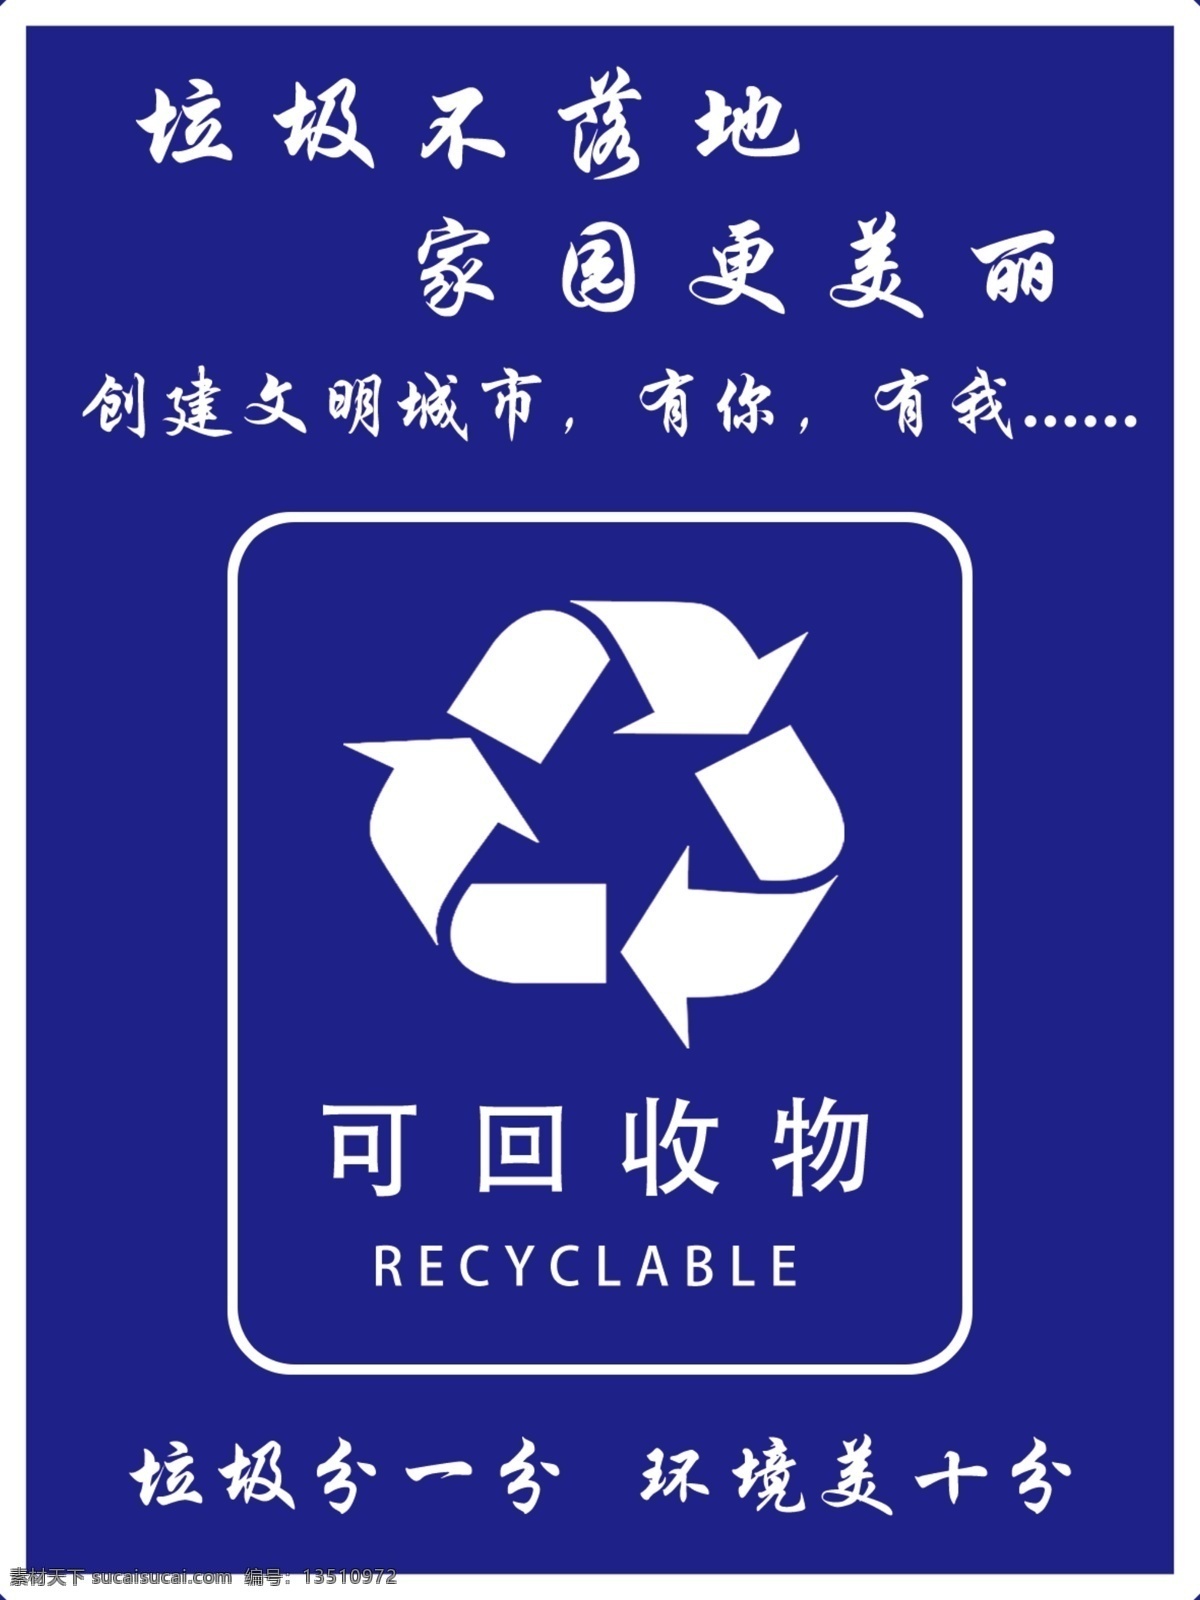 可回收垃圾 垃圾分类 垃圾箱标识 垃圾箱标志 垃圾桶标签 可回收 不可回收 金属类 塑料类 其他垃圾 分层